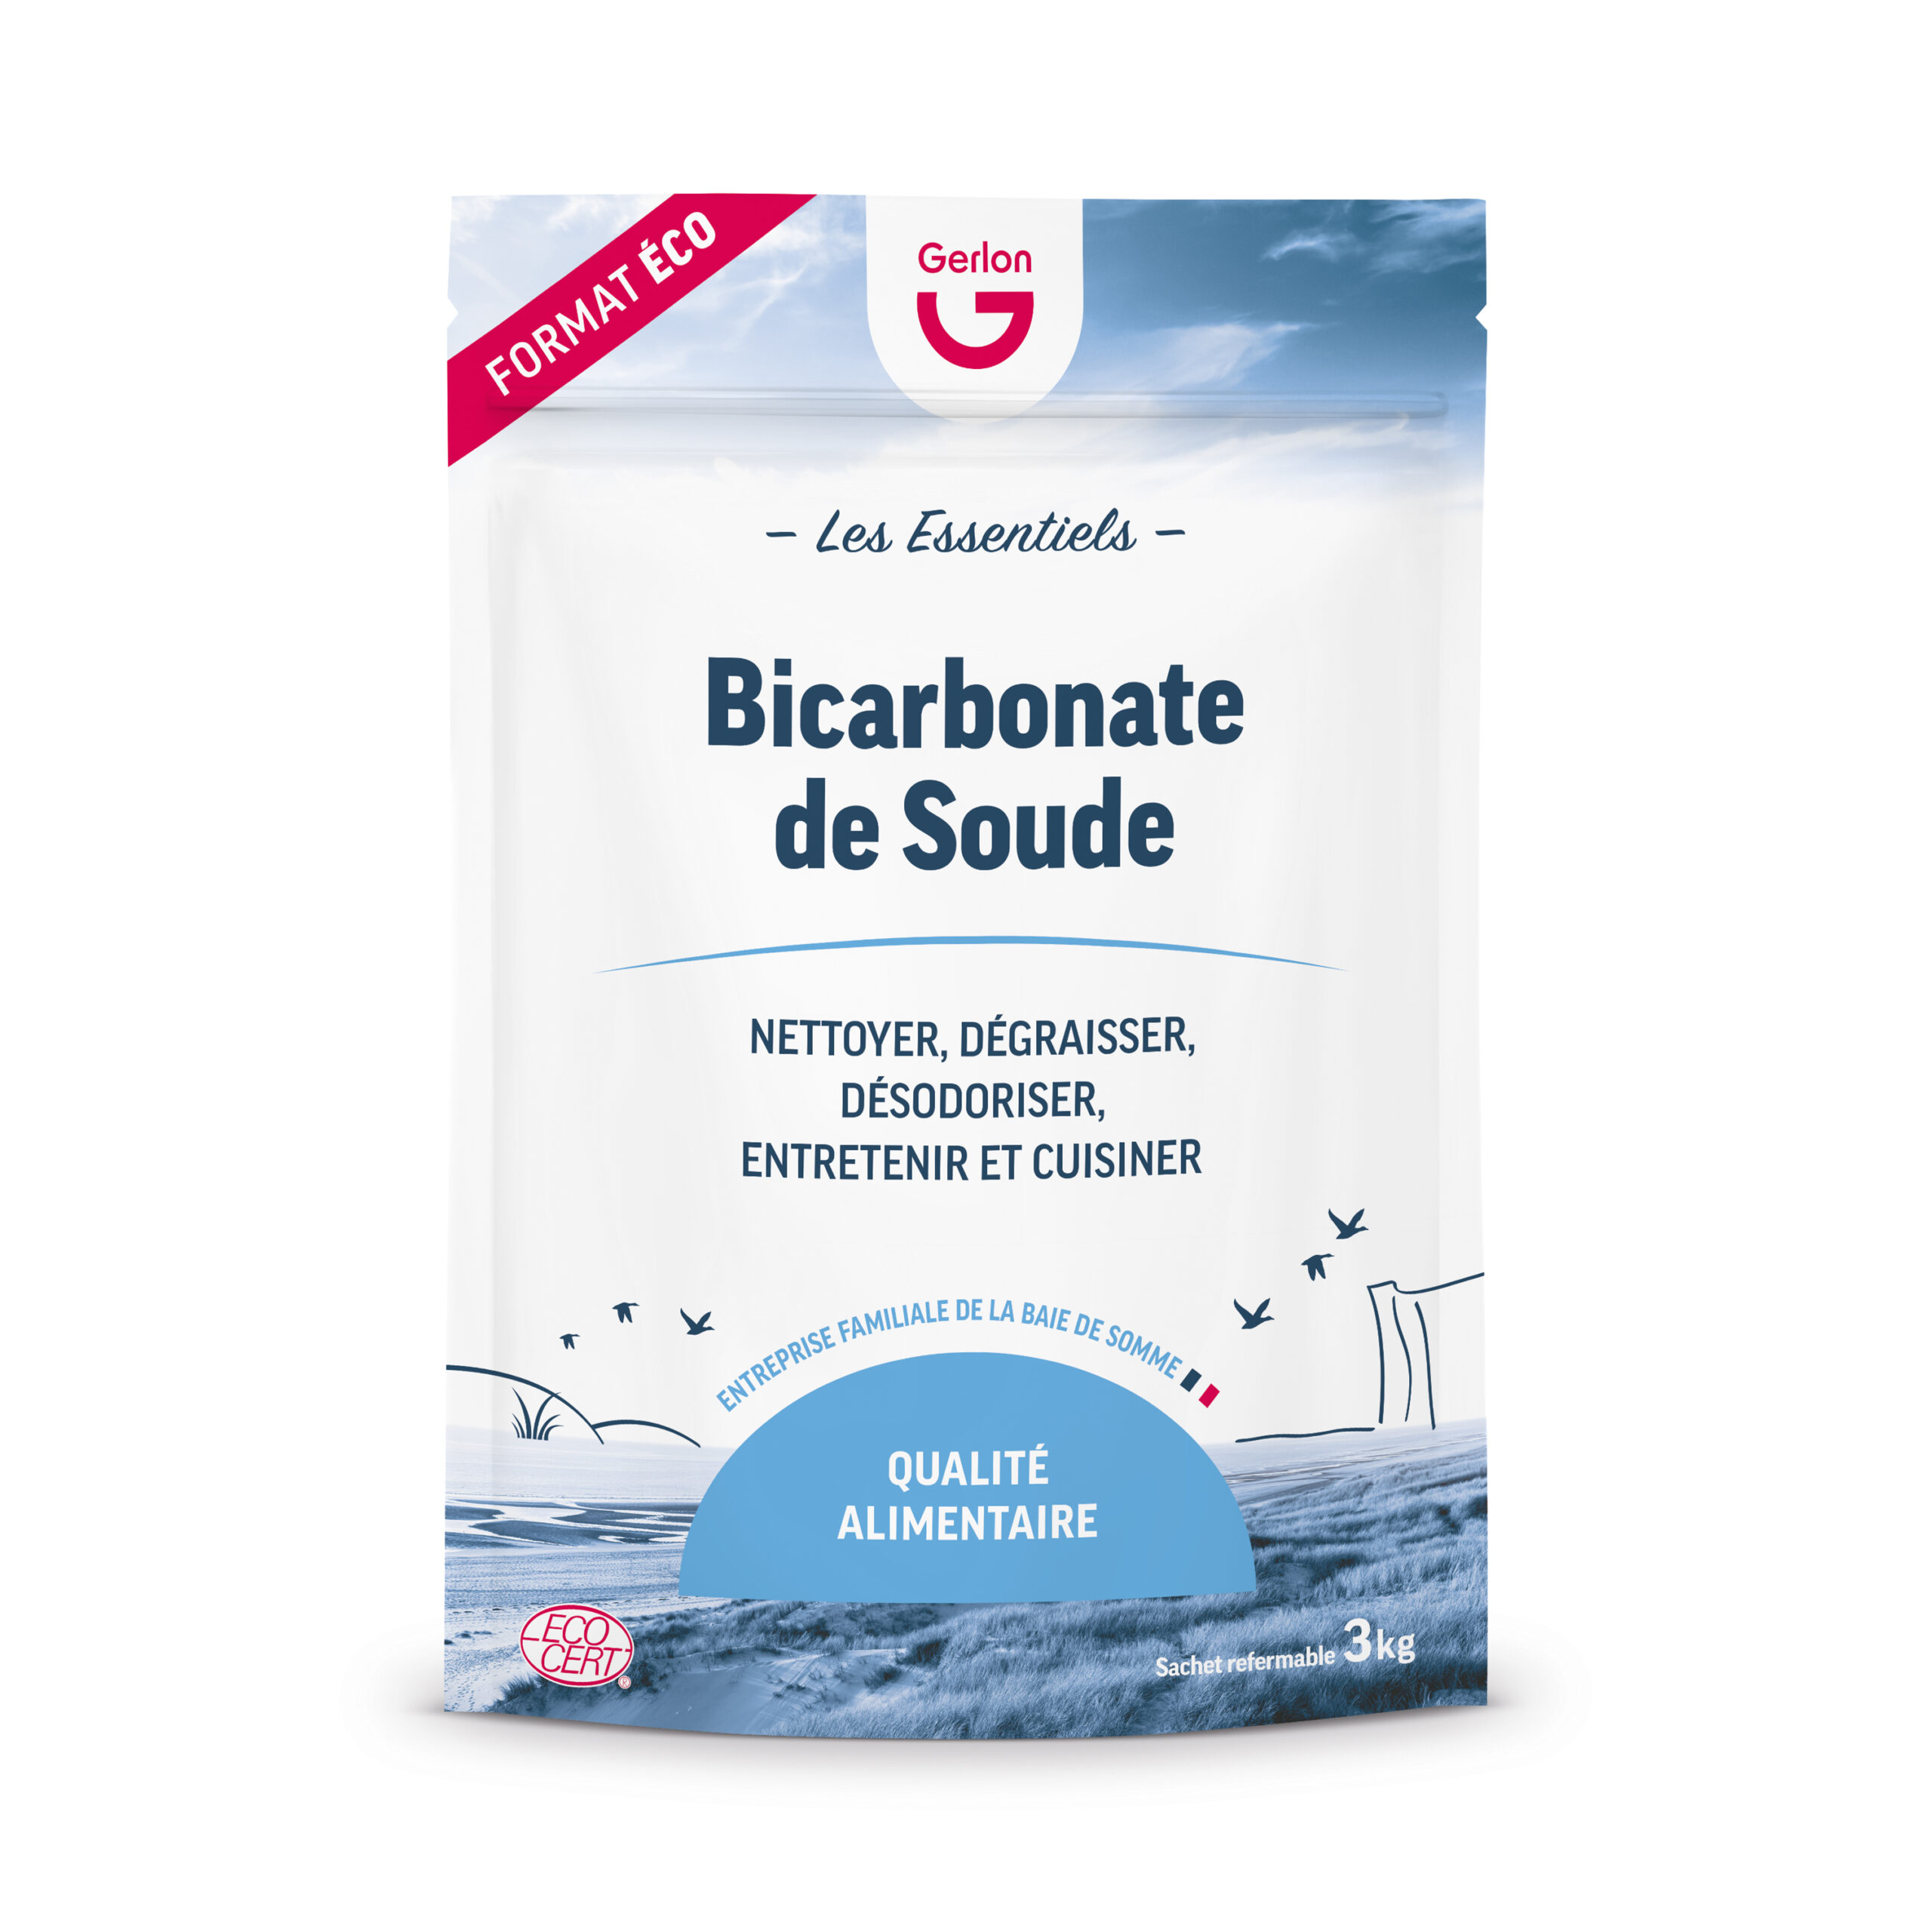 Bicarbonate de soude. Qualité Alimentaire. pour Le Jardin et la